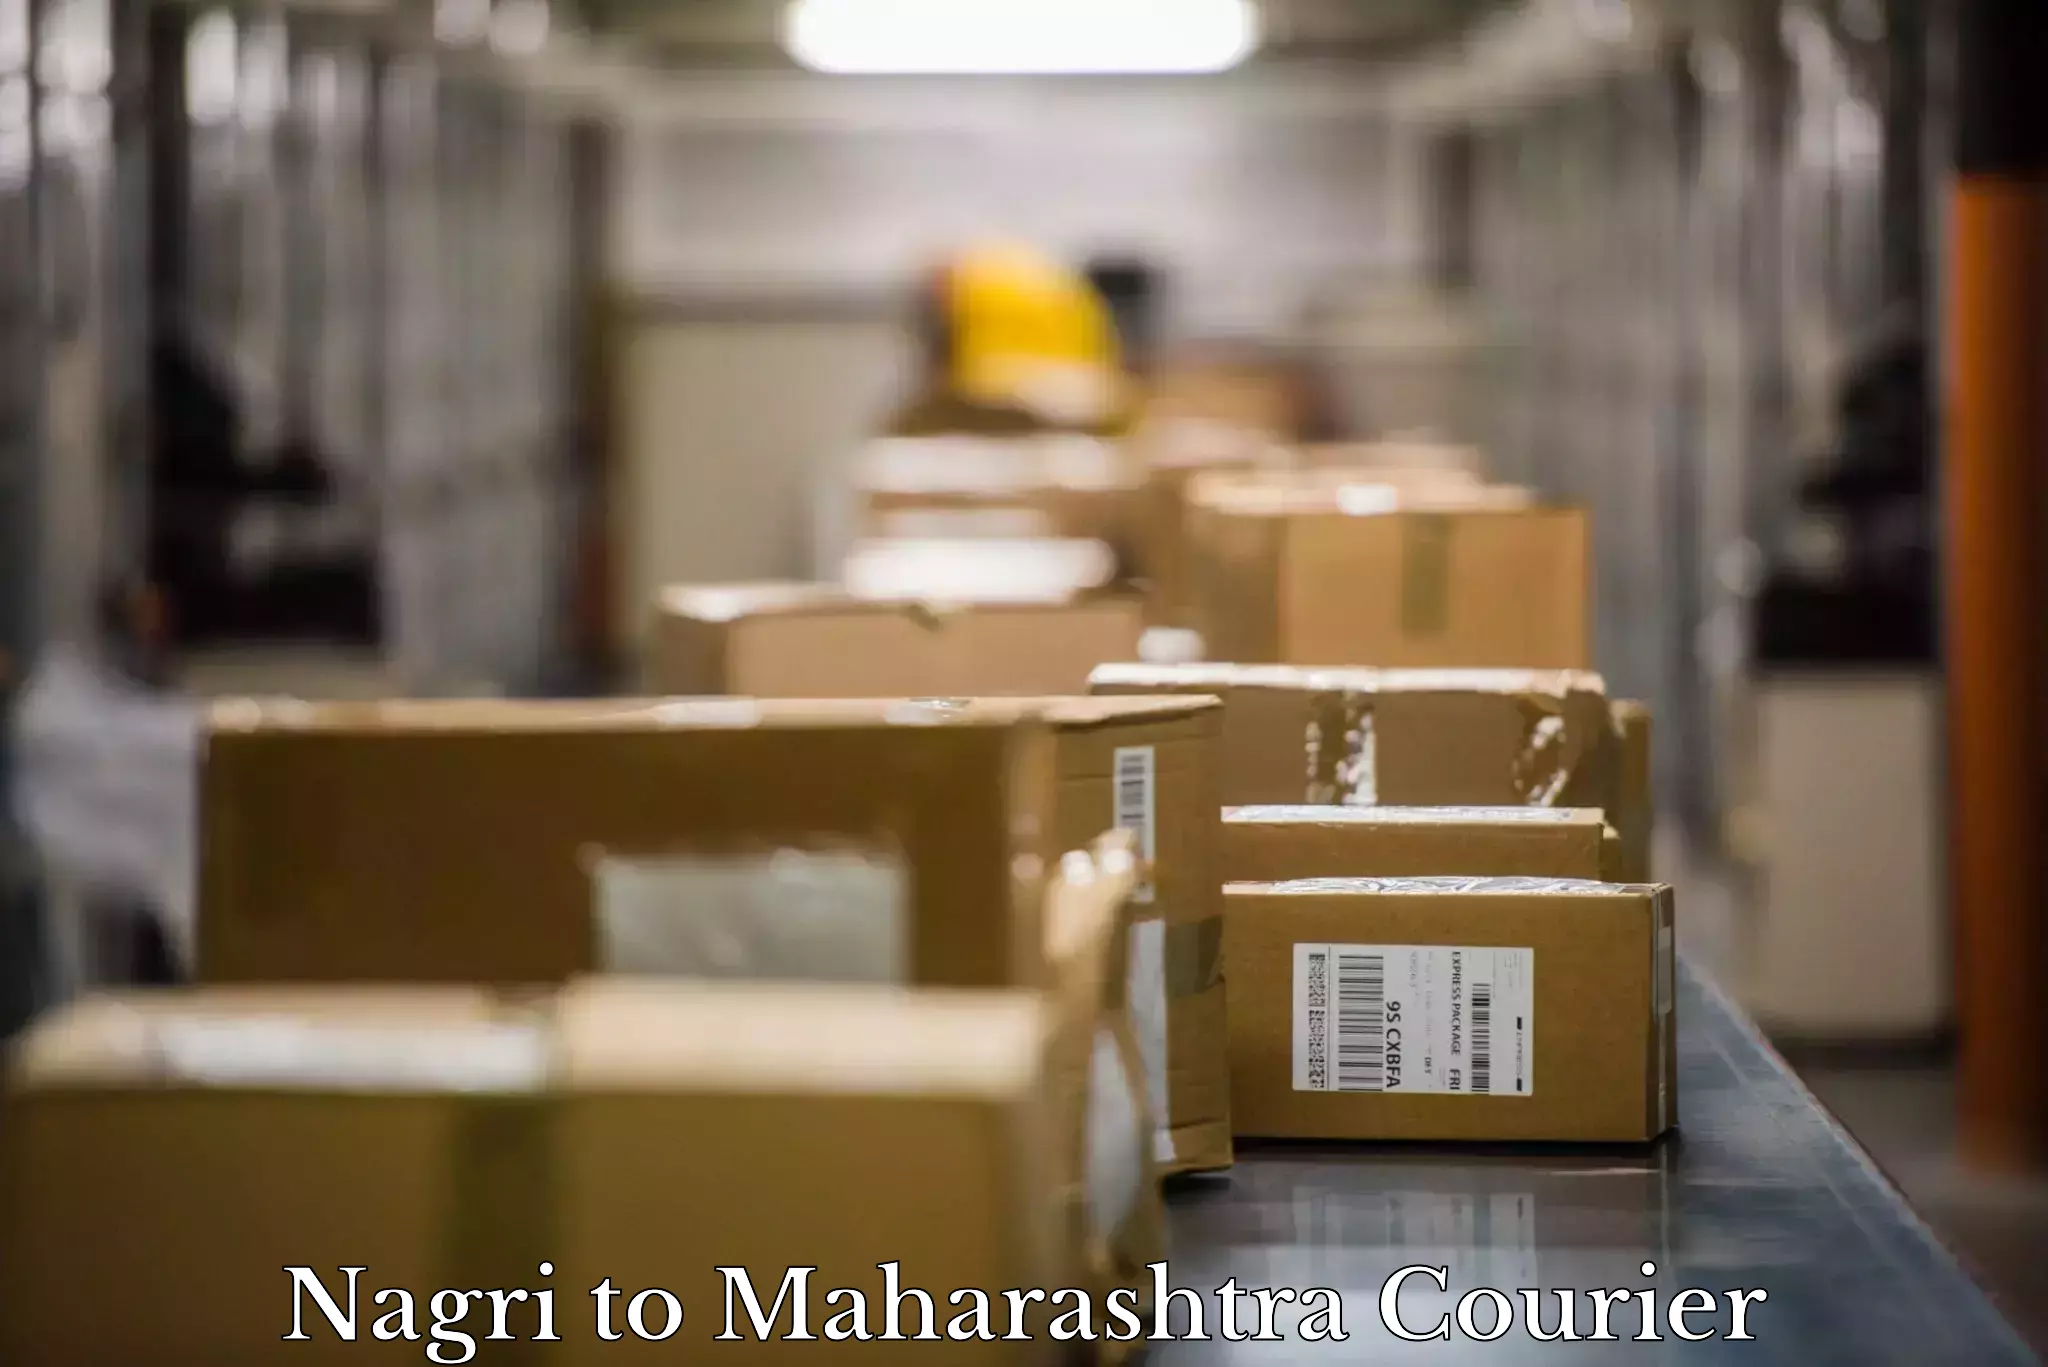 Furniture shipping services Nagri to Maharashtra